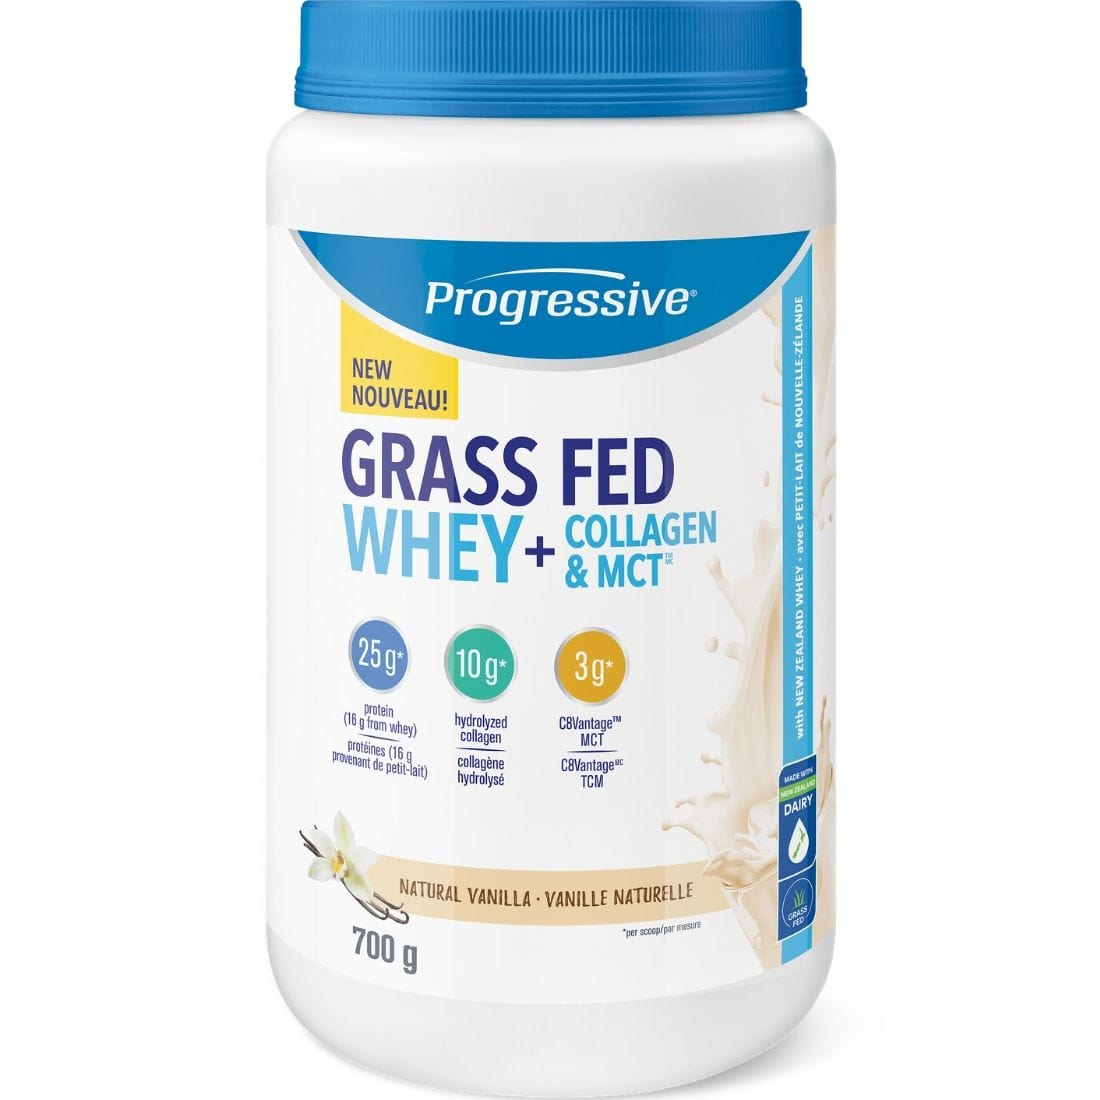 Progressive Grass Fed Whey + Collagen & MCT Powder, 700g